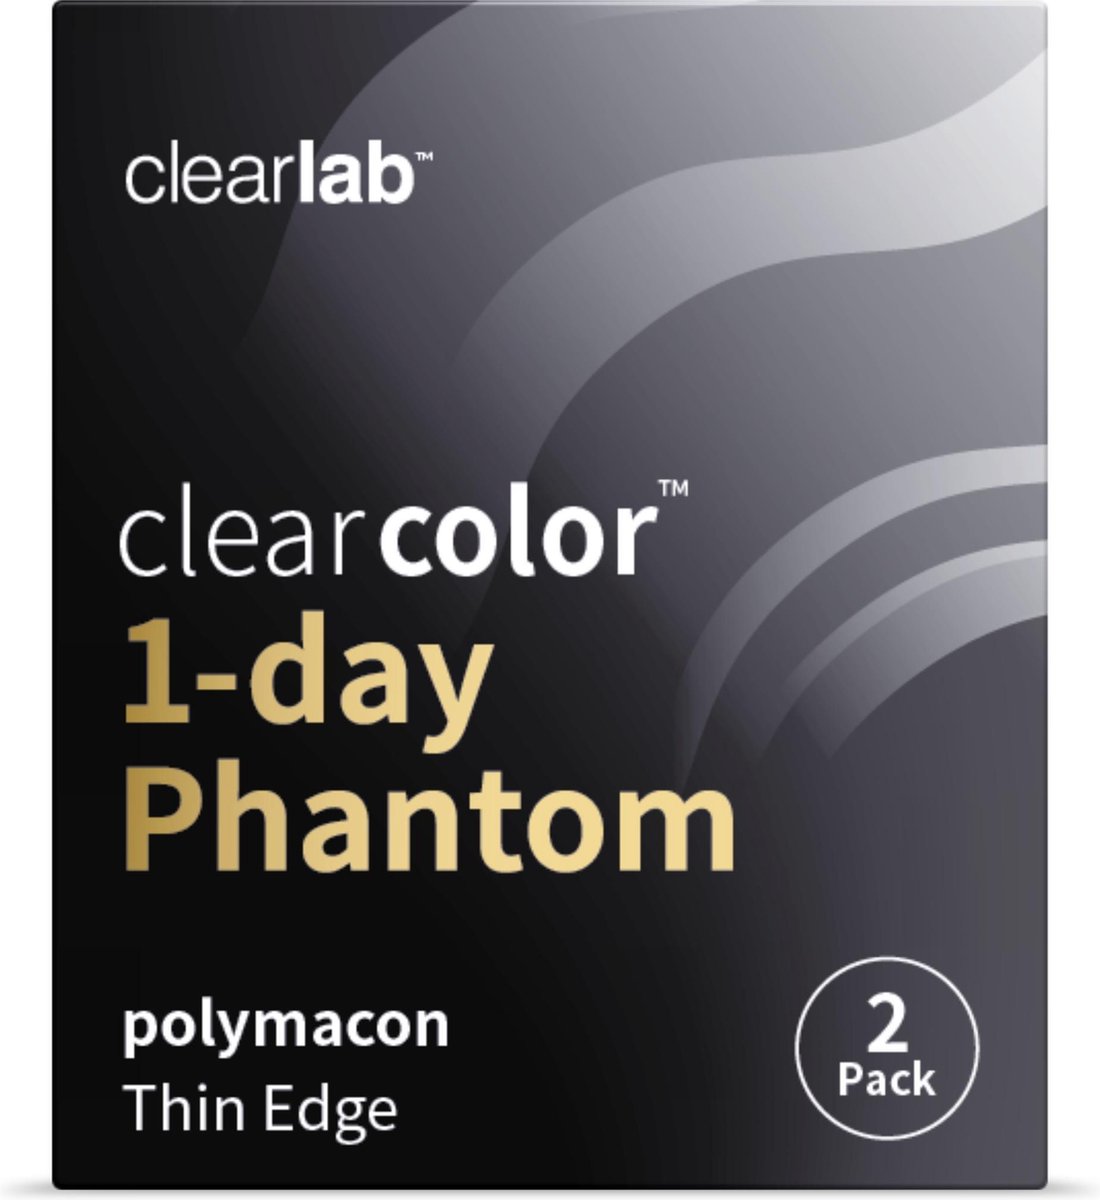 -2.25 - Clearcolor™ 1-day Phantom Zombie Yellow - 2 pack - Daglenzen - Partylenzen / Verkleden / Kleurlenzen - Zombie Yellow